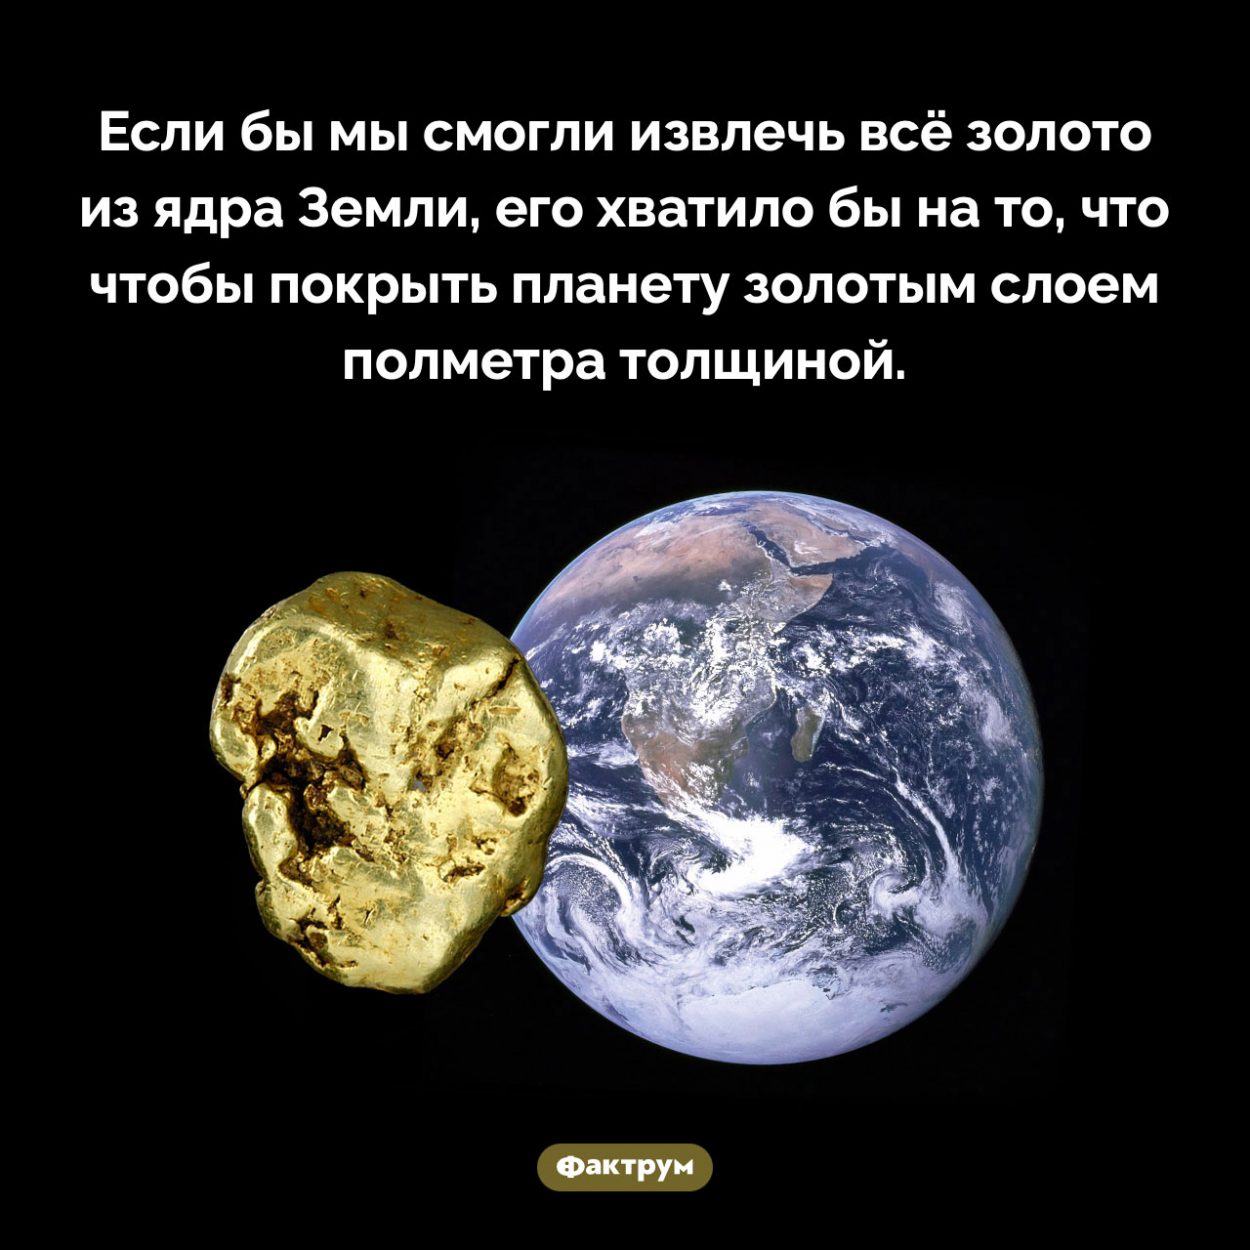 Сколько золота в ядре Земли. Если бы мы смогли извлечь всё золото из ядра Земли, его хватило бы на то, что чтобы покрыть планету золотым слоем полметра толщиной.